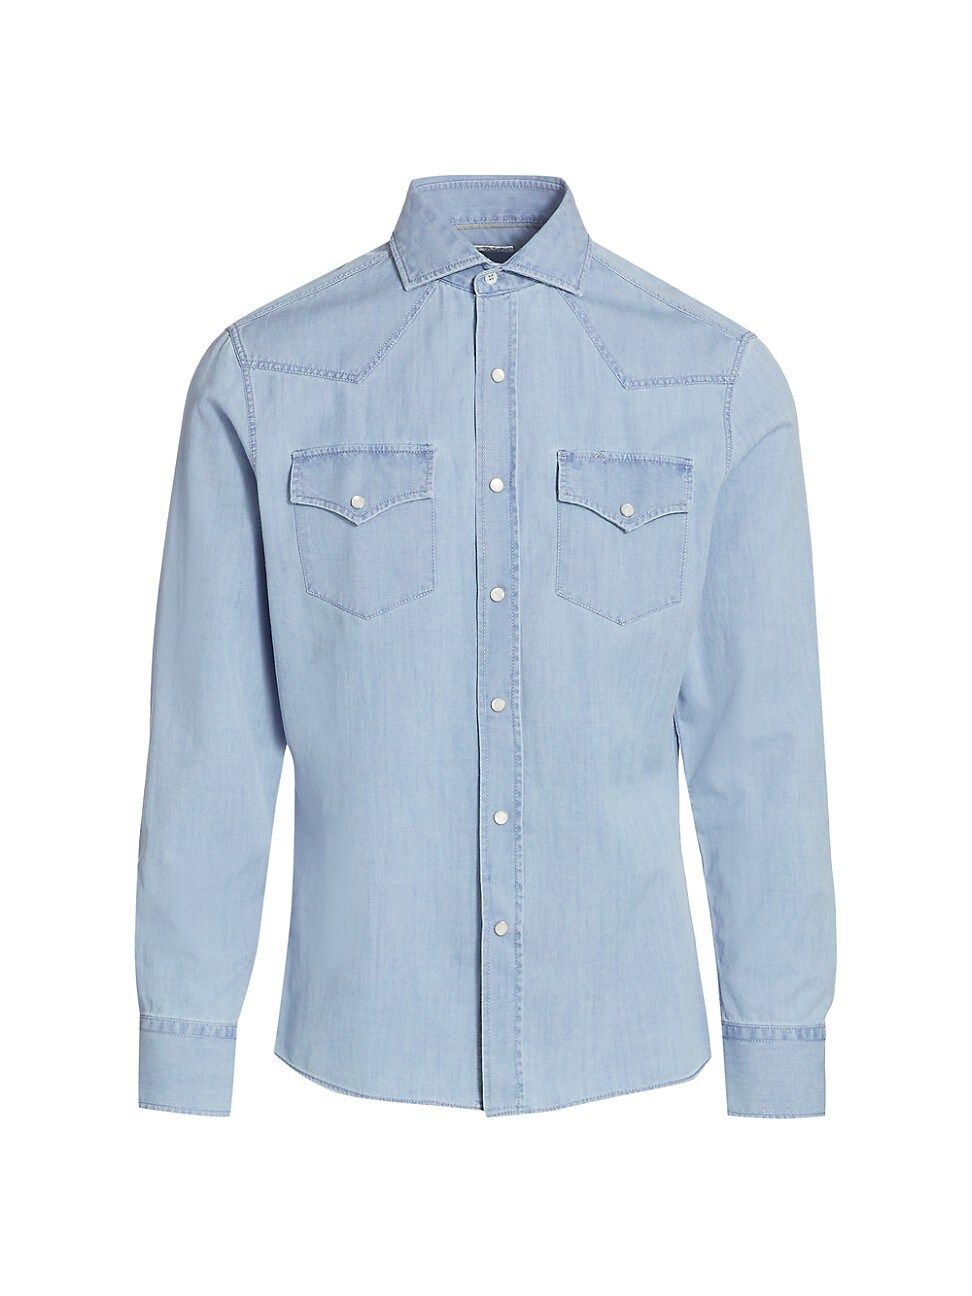 Brunello Cucinelli Men's Western Denim Shirt - Denim - Size XXXL | Saks Fifth Avenue